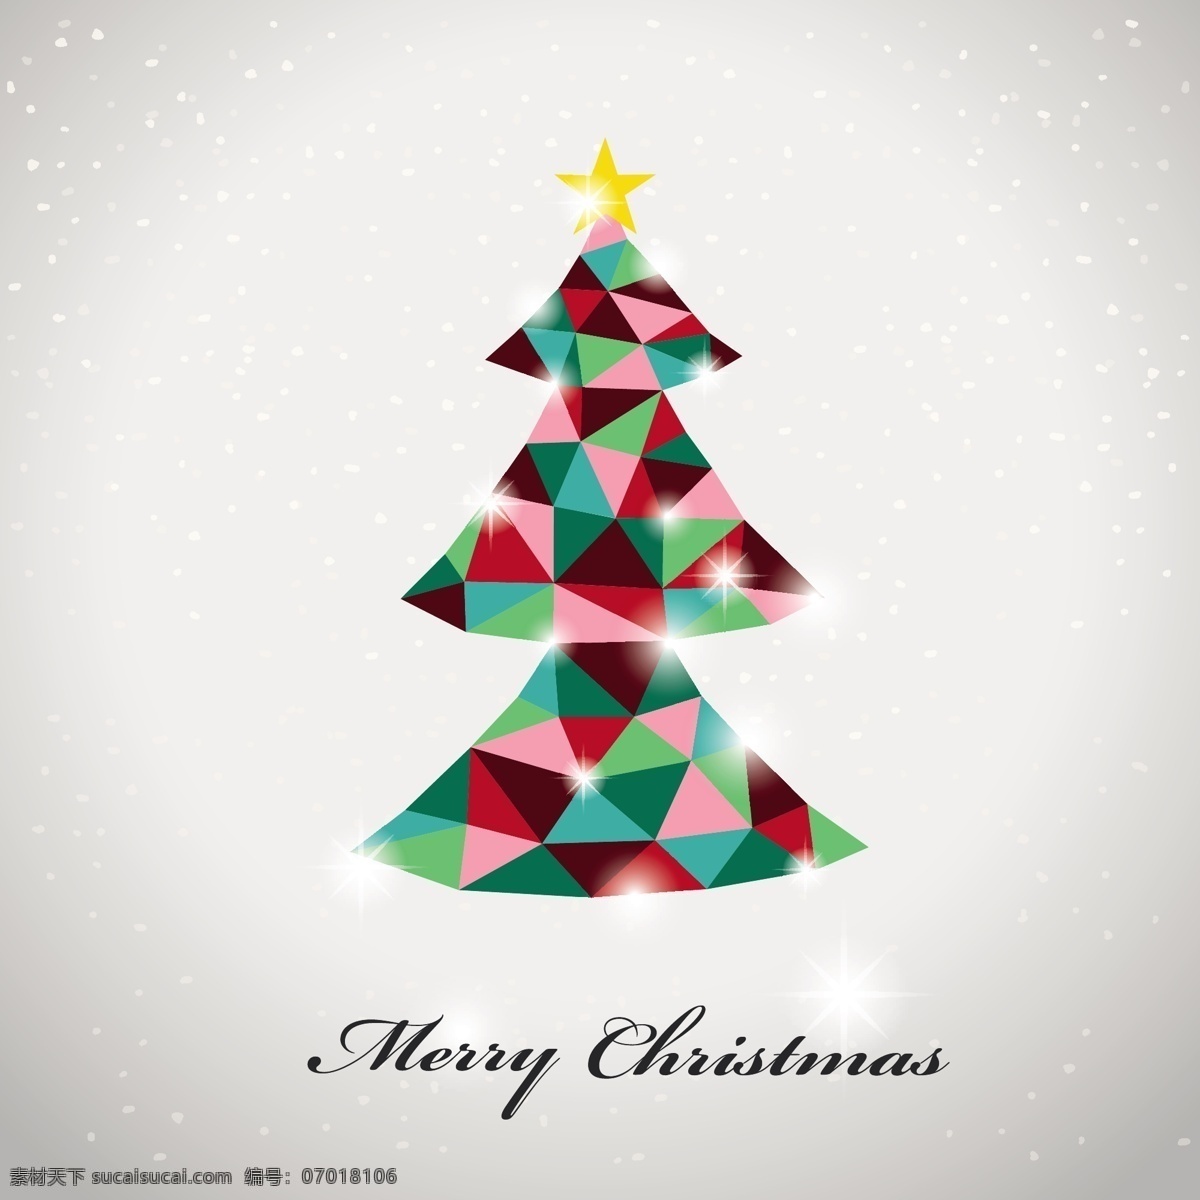 三角 拼接 圣诞树 三角拼接 三角形 方块 切割 多边形 几何形 星星 五彩缤纷 彩色 圣诞节 节日 圣诞元素 圣诞快乐 merry christmas 矢量素材 白色